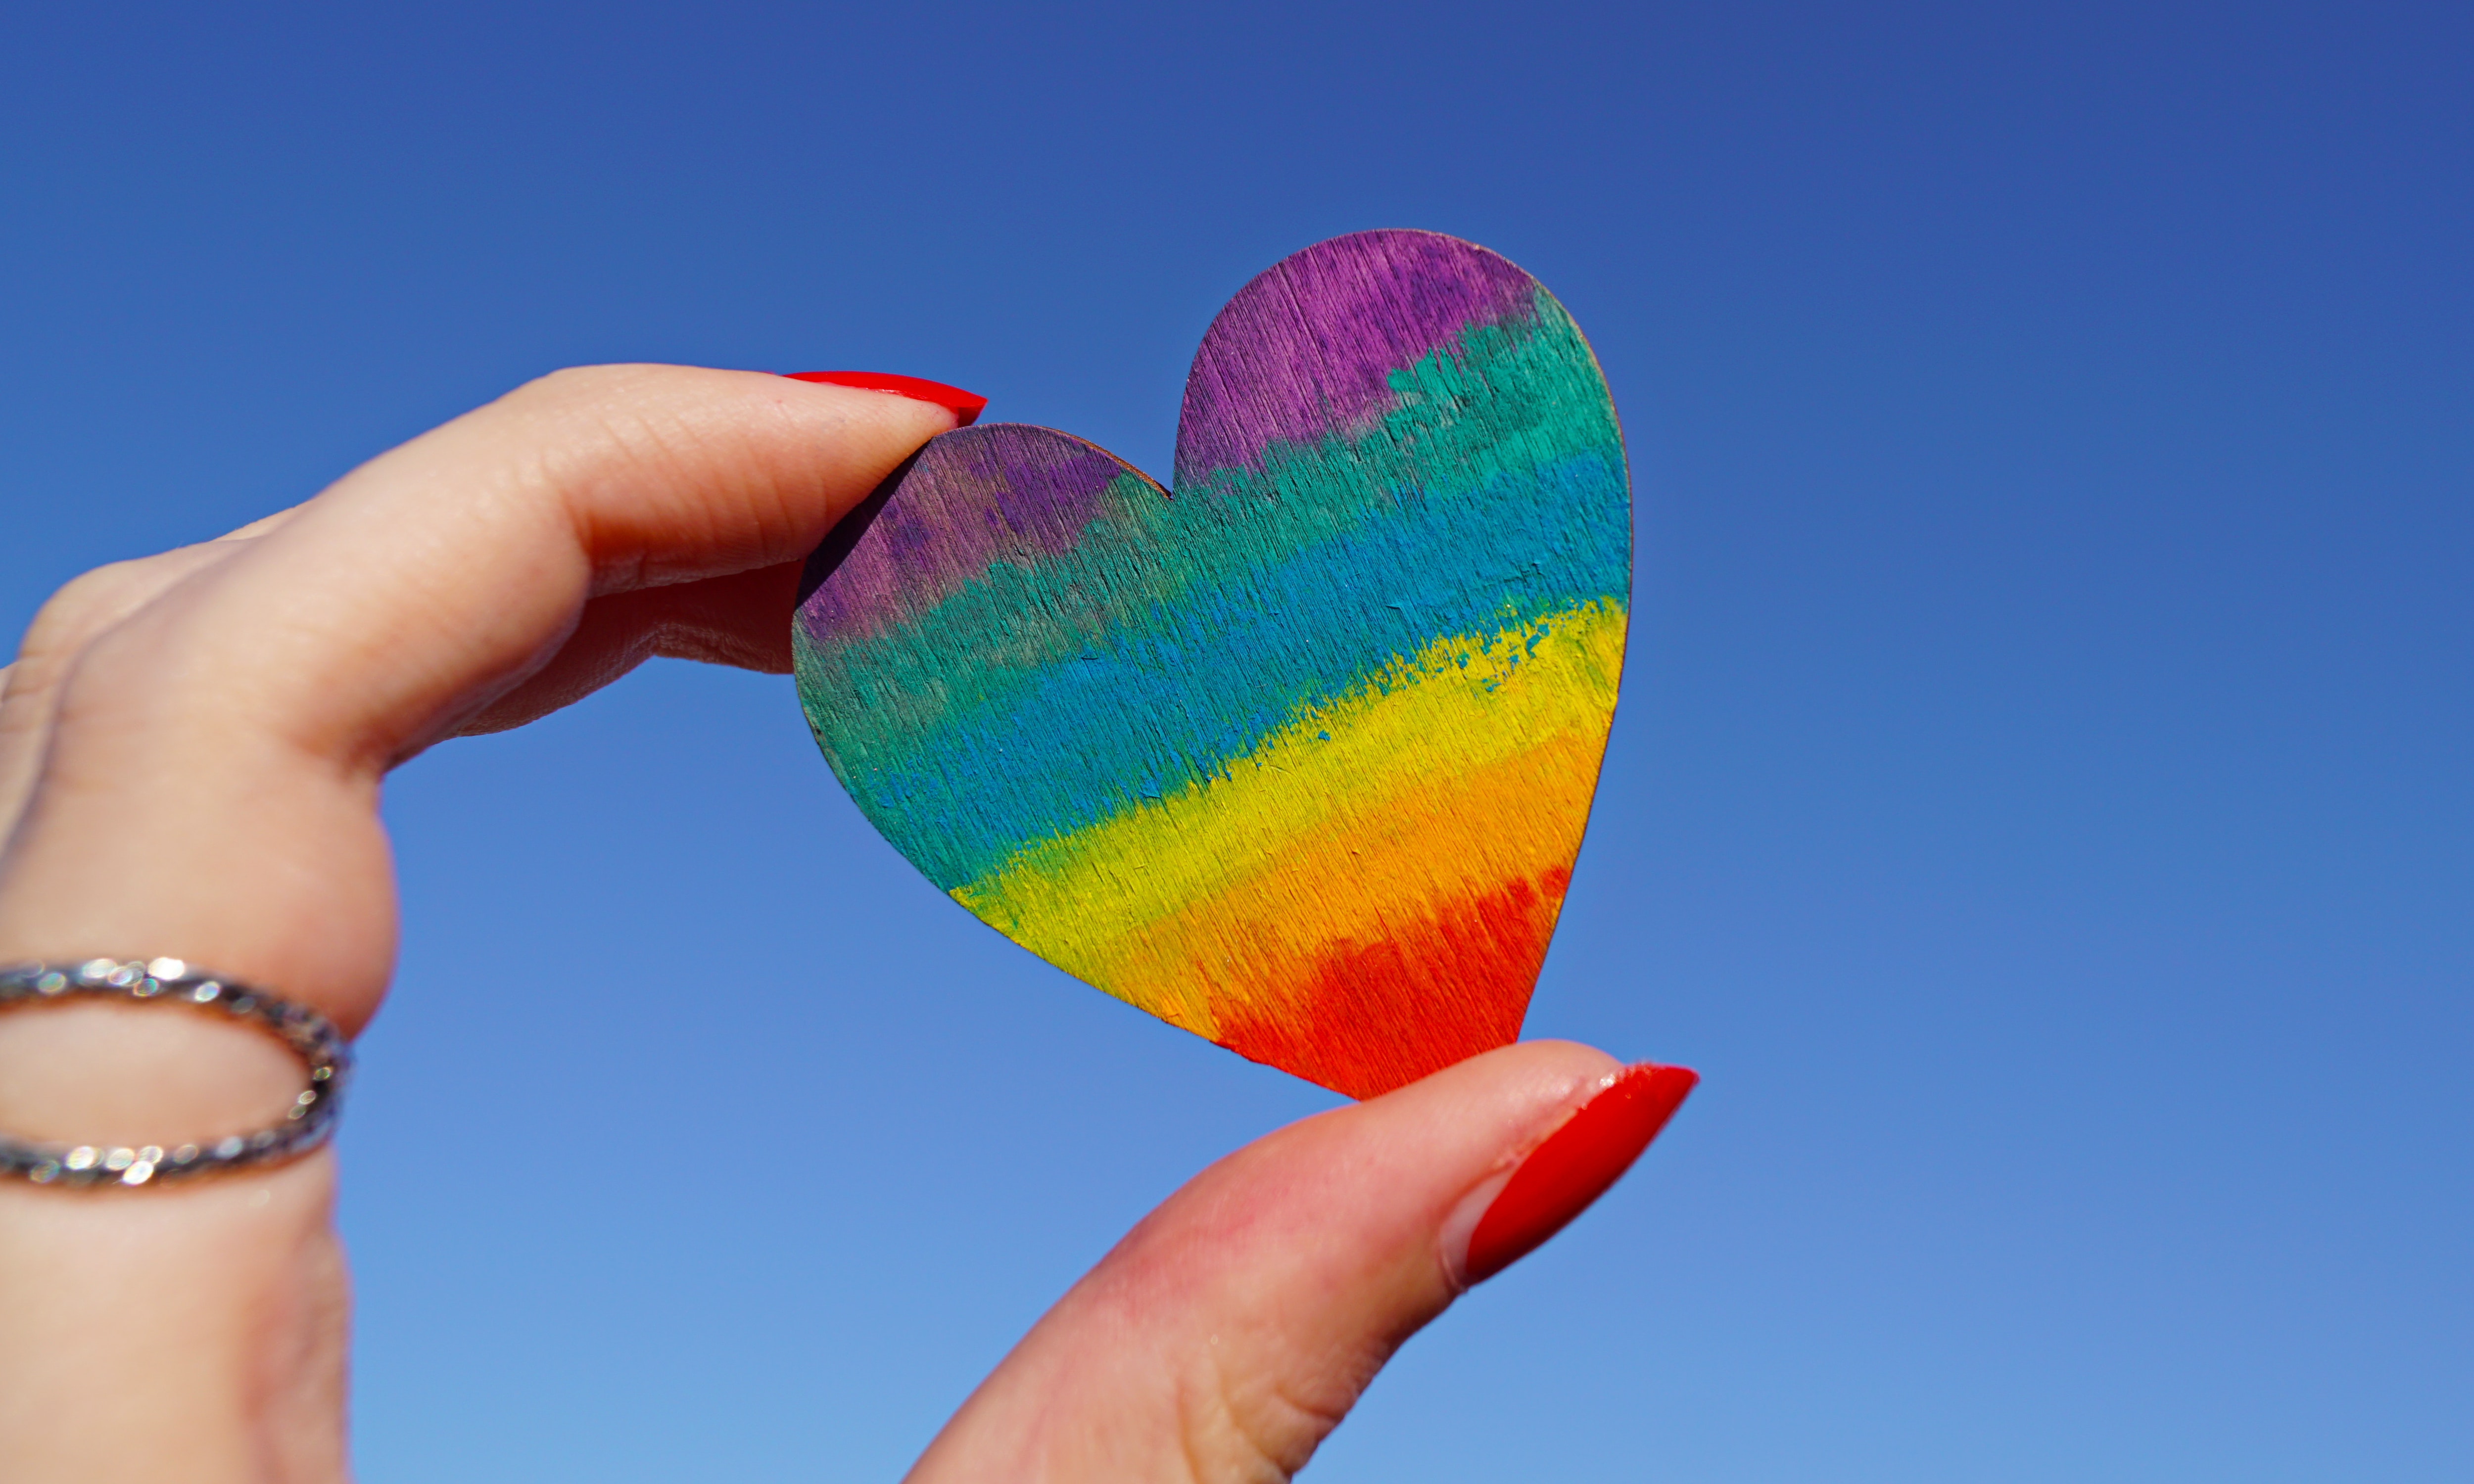 ¡Feliz del Día del Orgullo LGBT! Imágenes y las mejores frases para compartir por el orgullo de la diversidad este 28 de junio (Foto: Pexels).